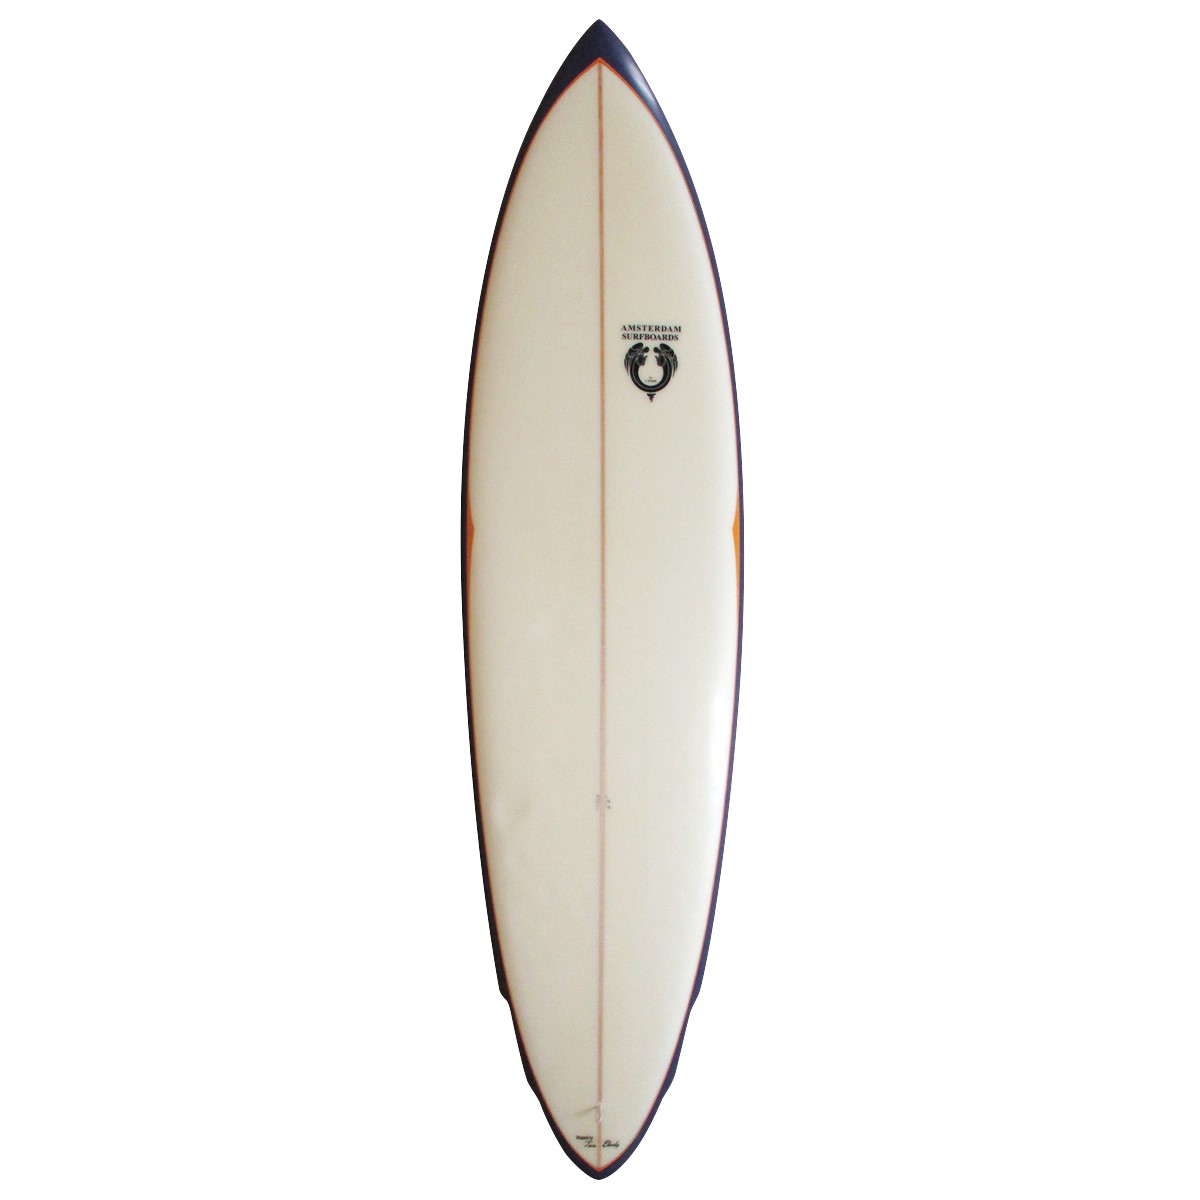 SURFBOARDS BY JOEL TUDOR / SURFBOARDS BY JOEL TUDOR / SINGLE PIN 6'6